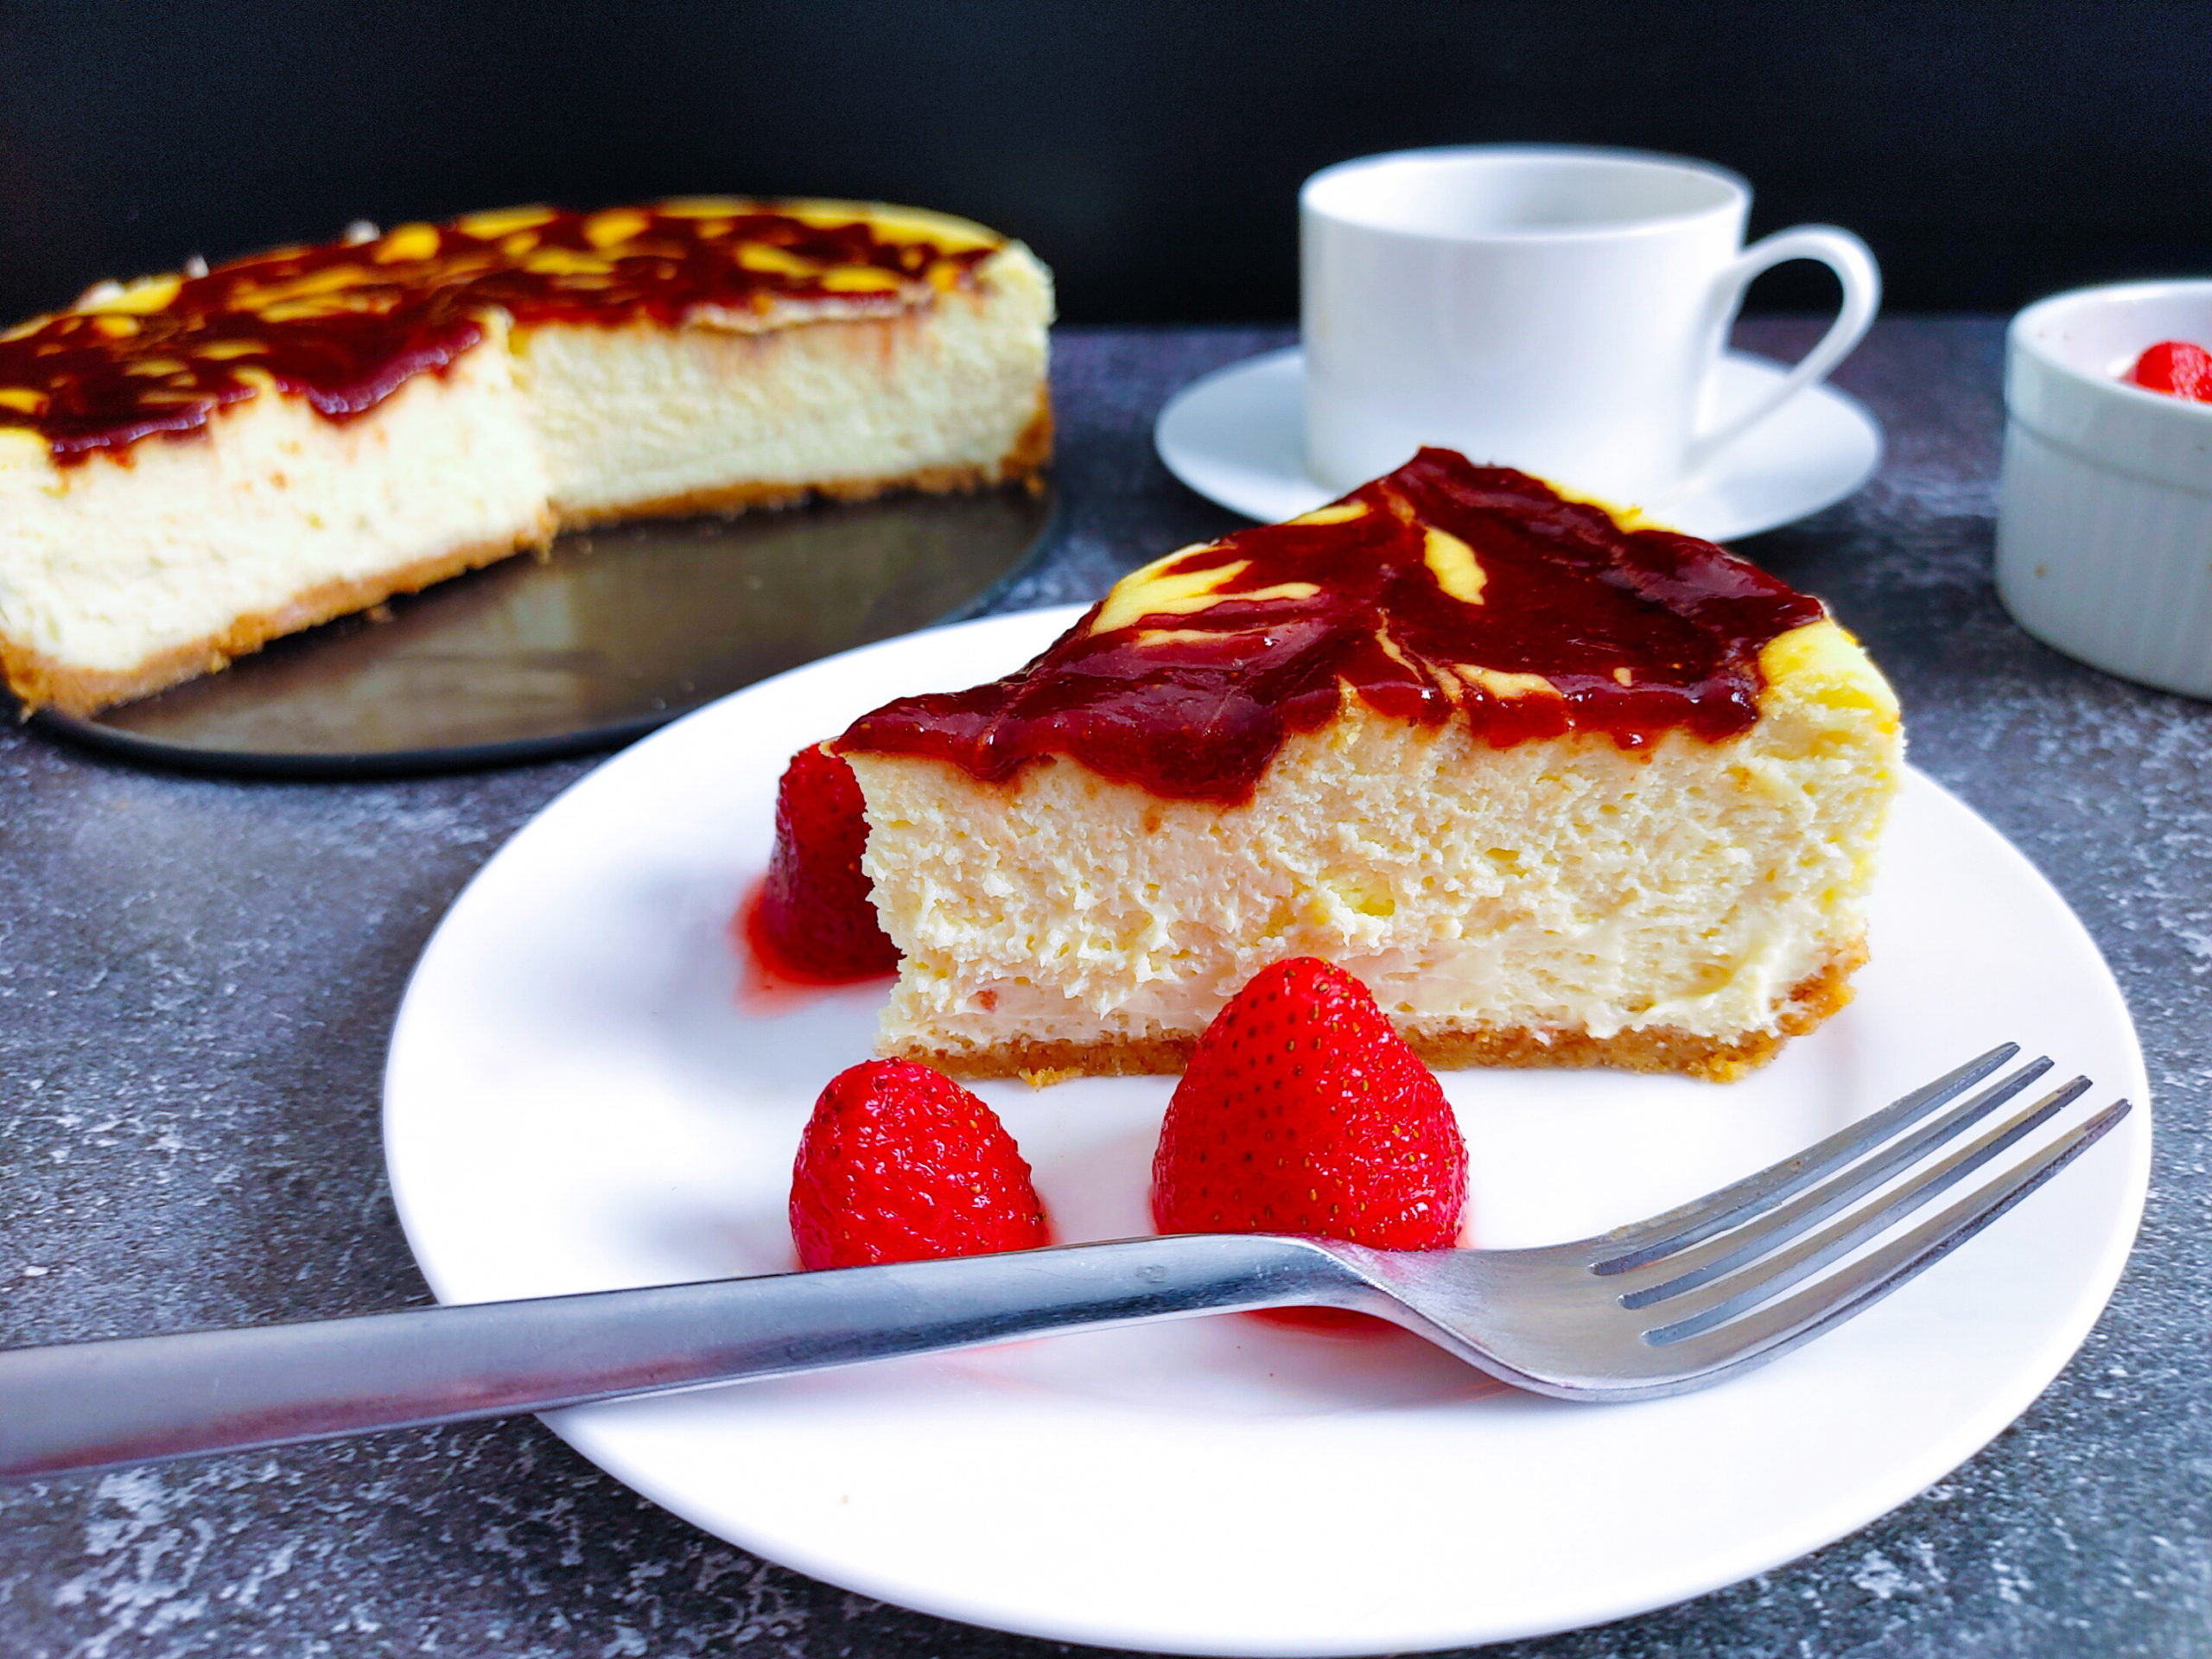 Strawberry Swirl Cheesecake Recipe: How to Make